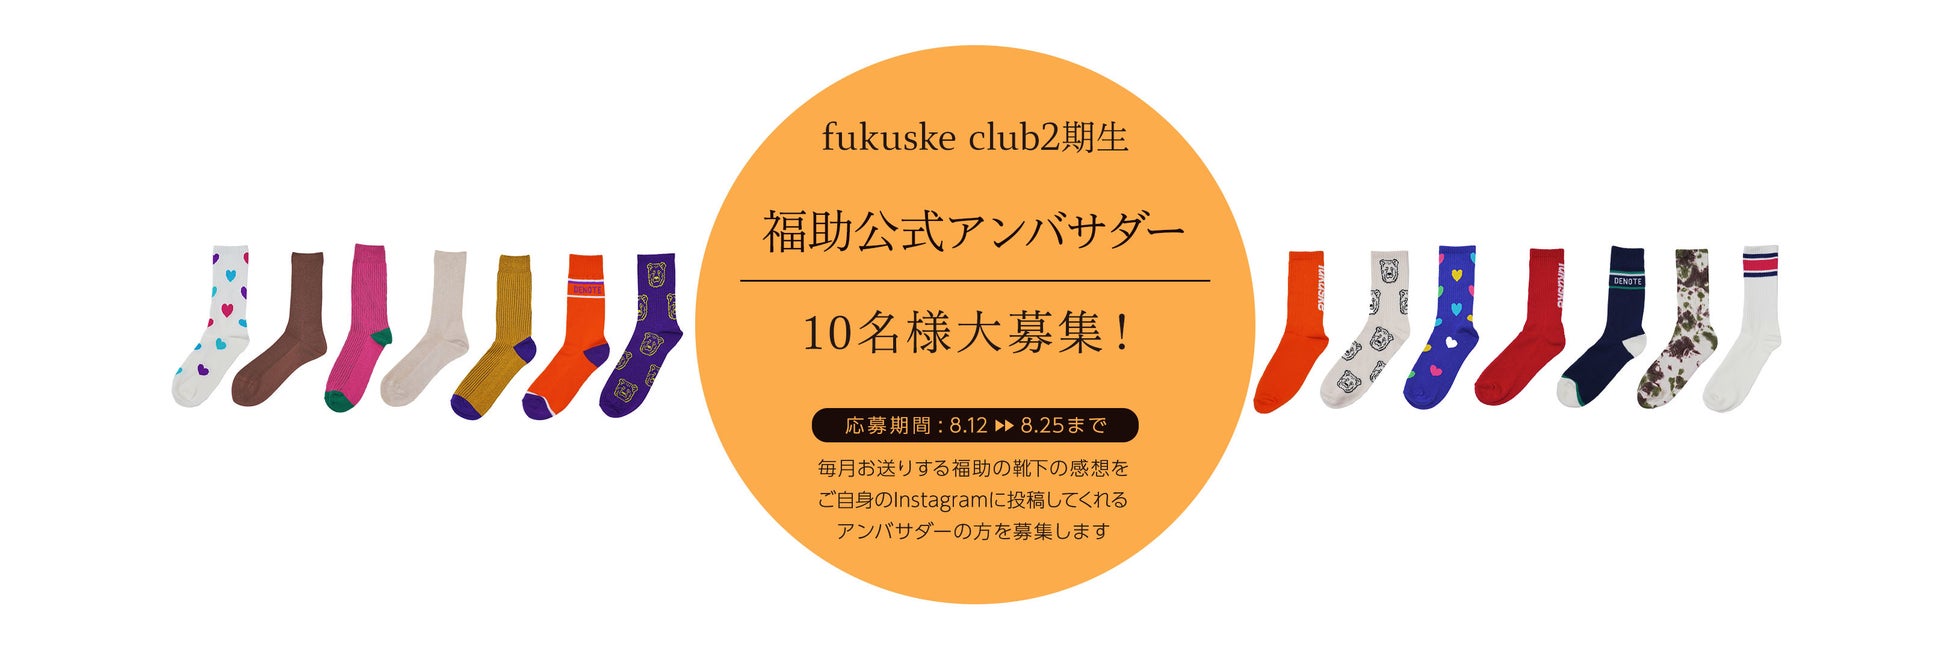 福助公式アンバサダー　「fukuske club」2期生を募集